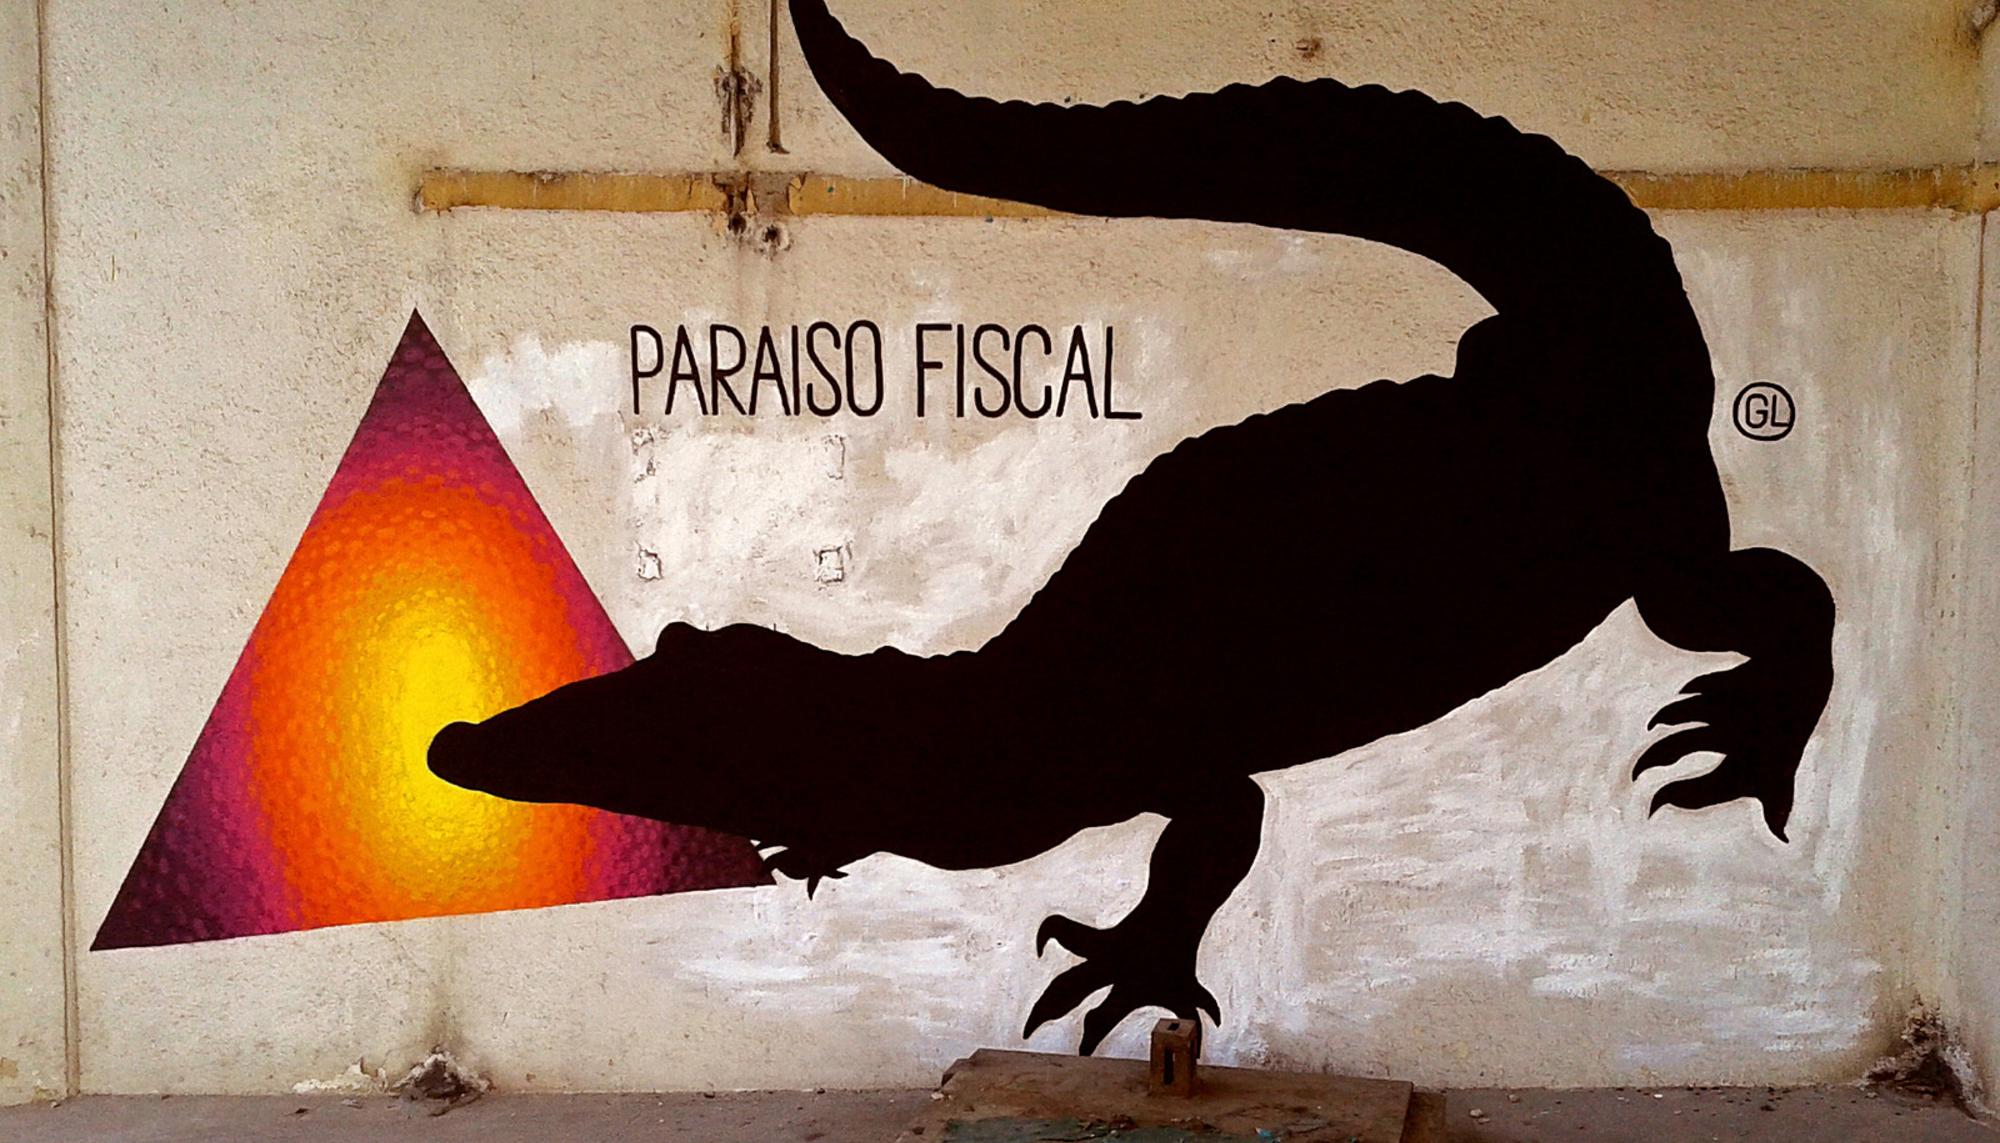 PARAÍSO FISCAL. Obra de @gaucholadri en colaboración con E1000, Madrid